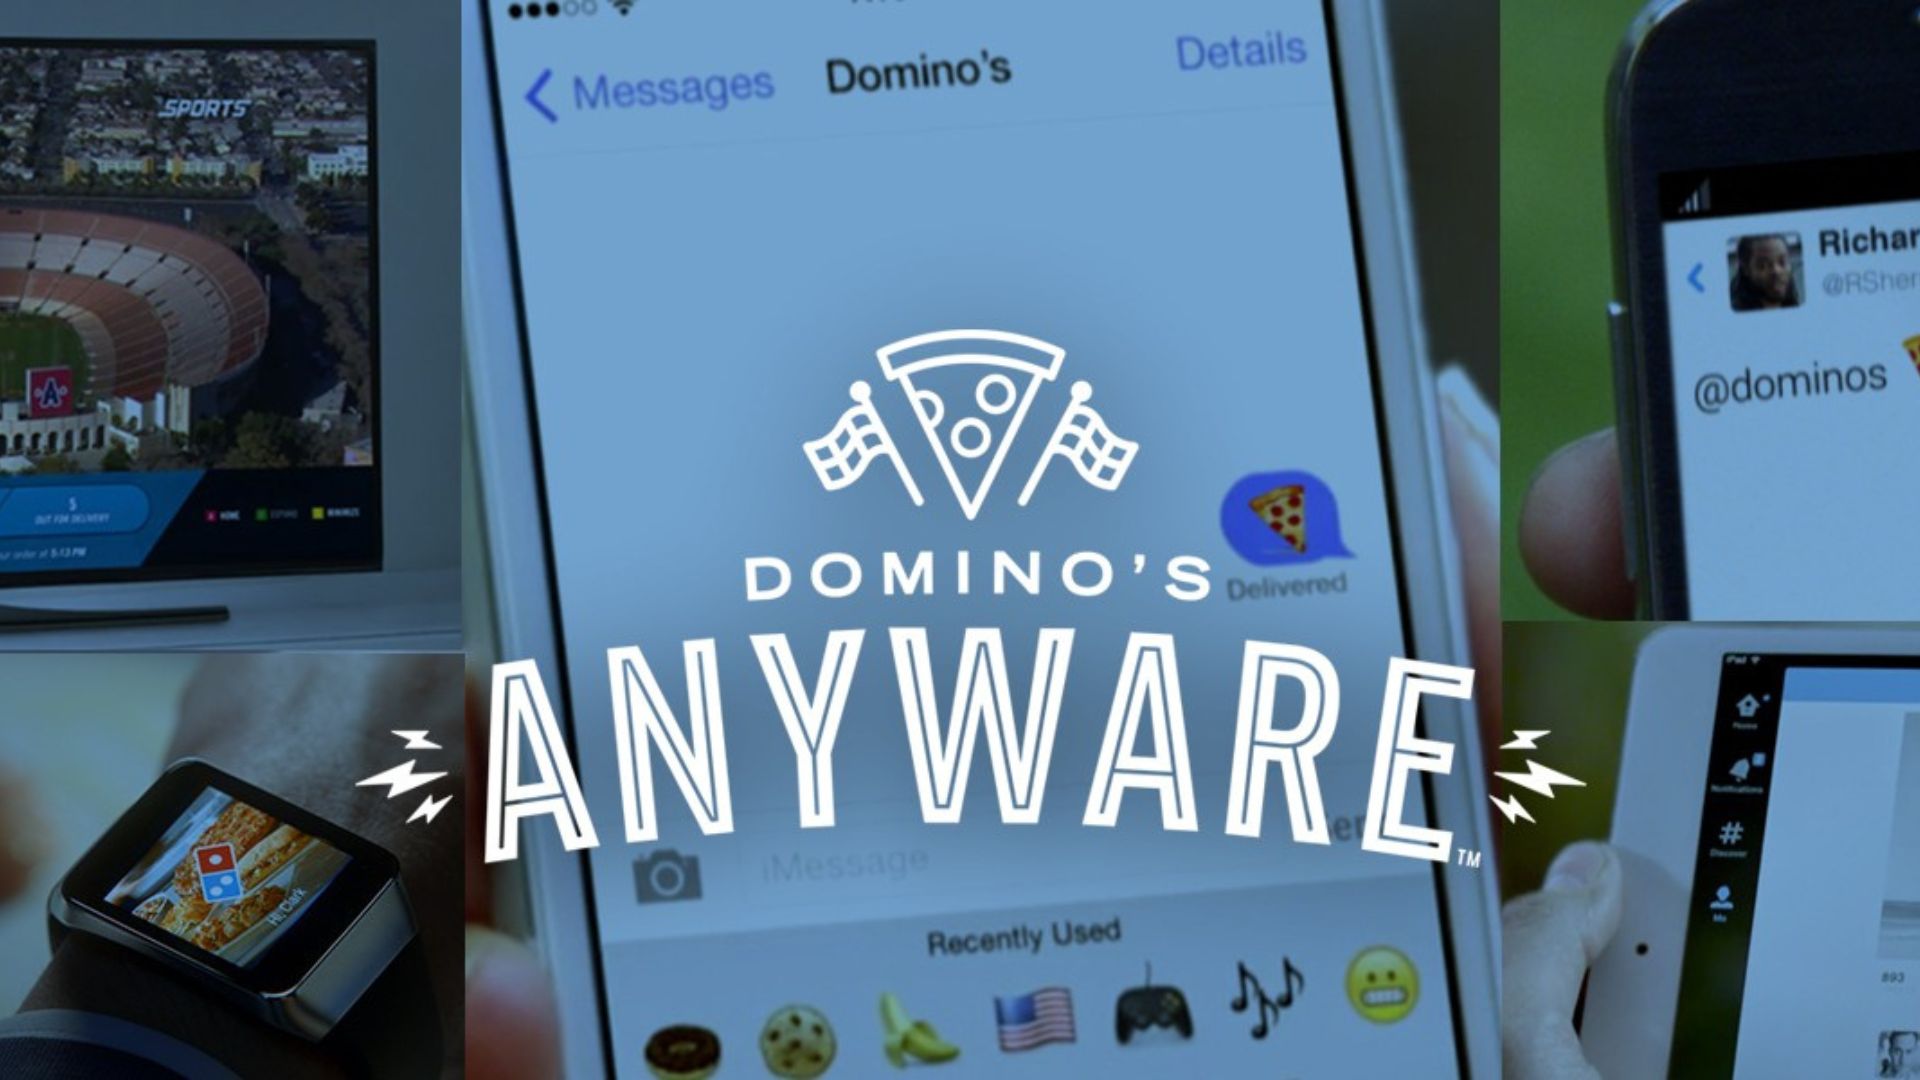 Domino's AnyWare campaign